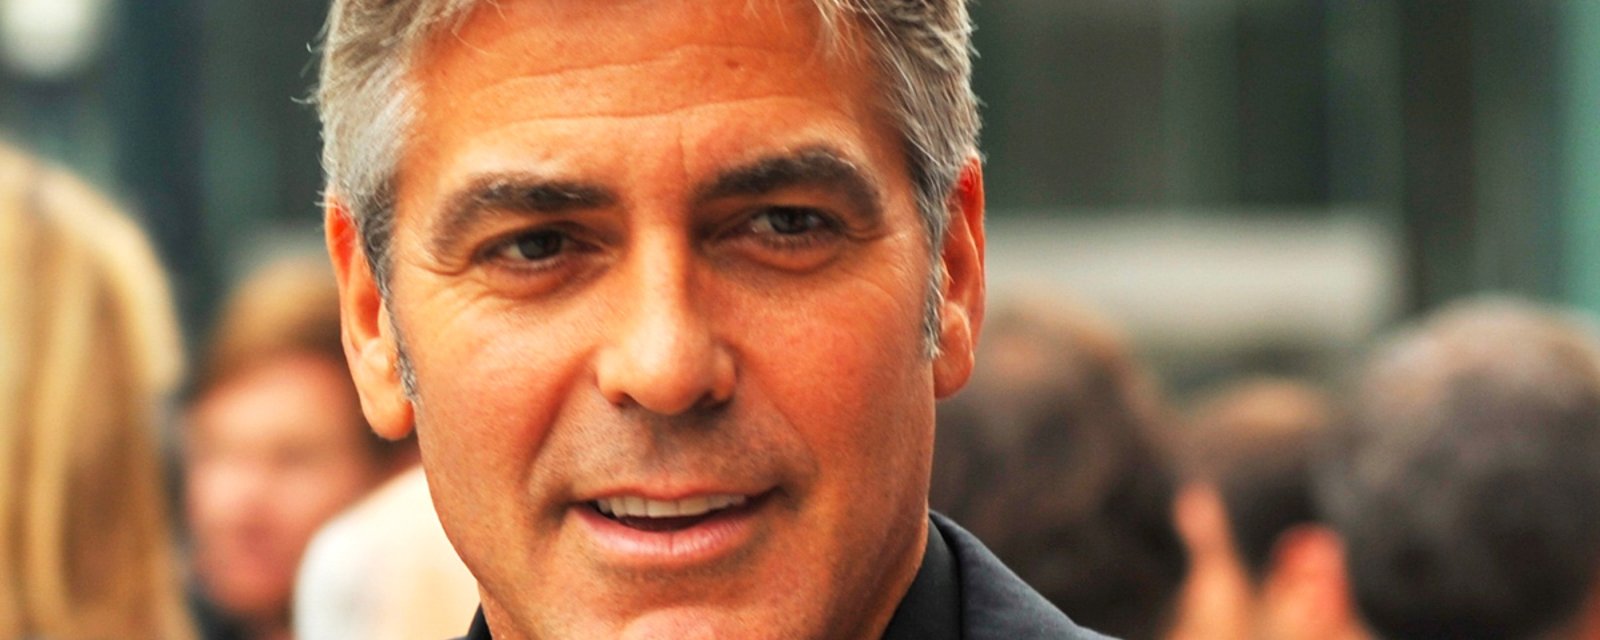 George Clooney a offert 1.3 million de dollars à 14 de ses amis pour les remercier